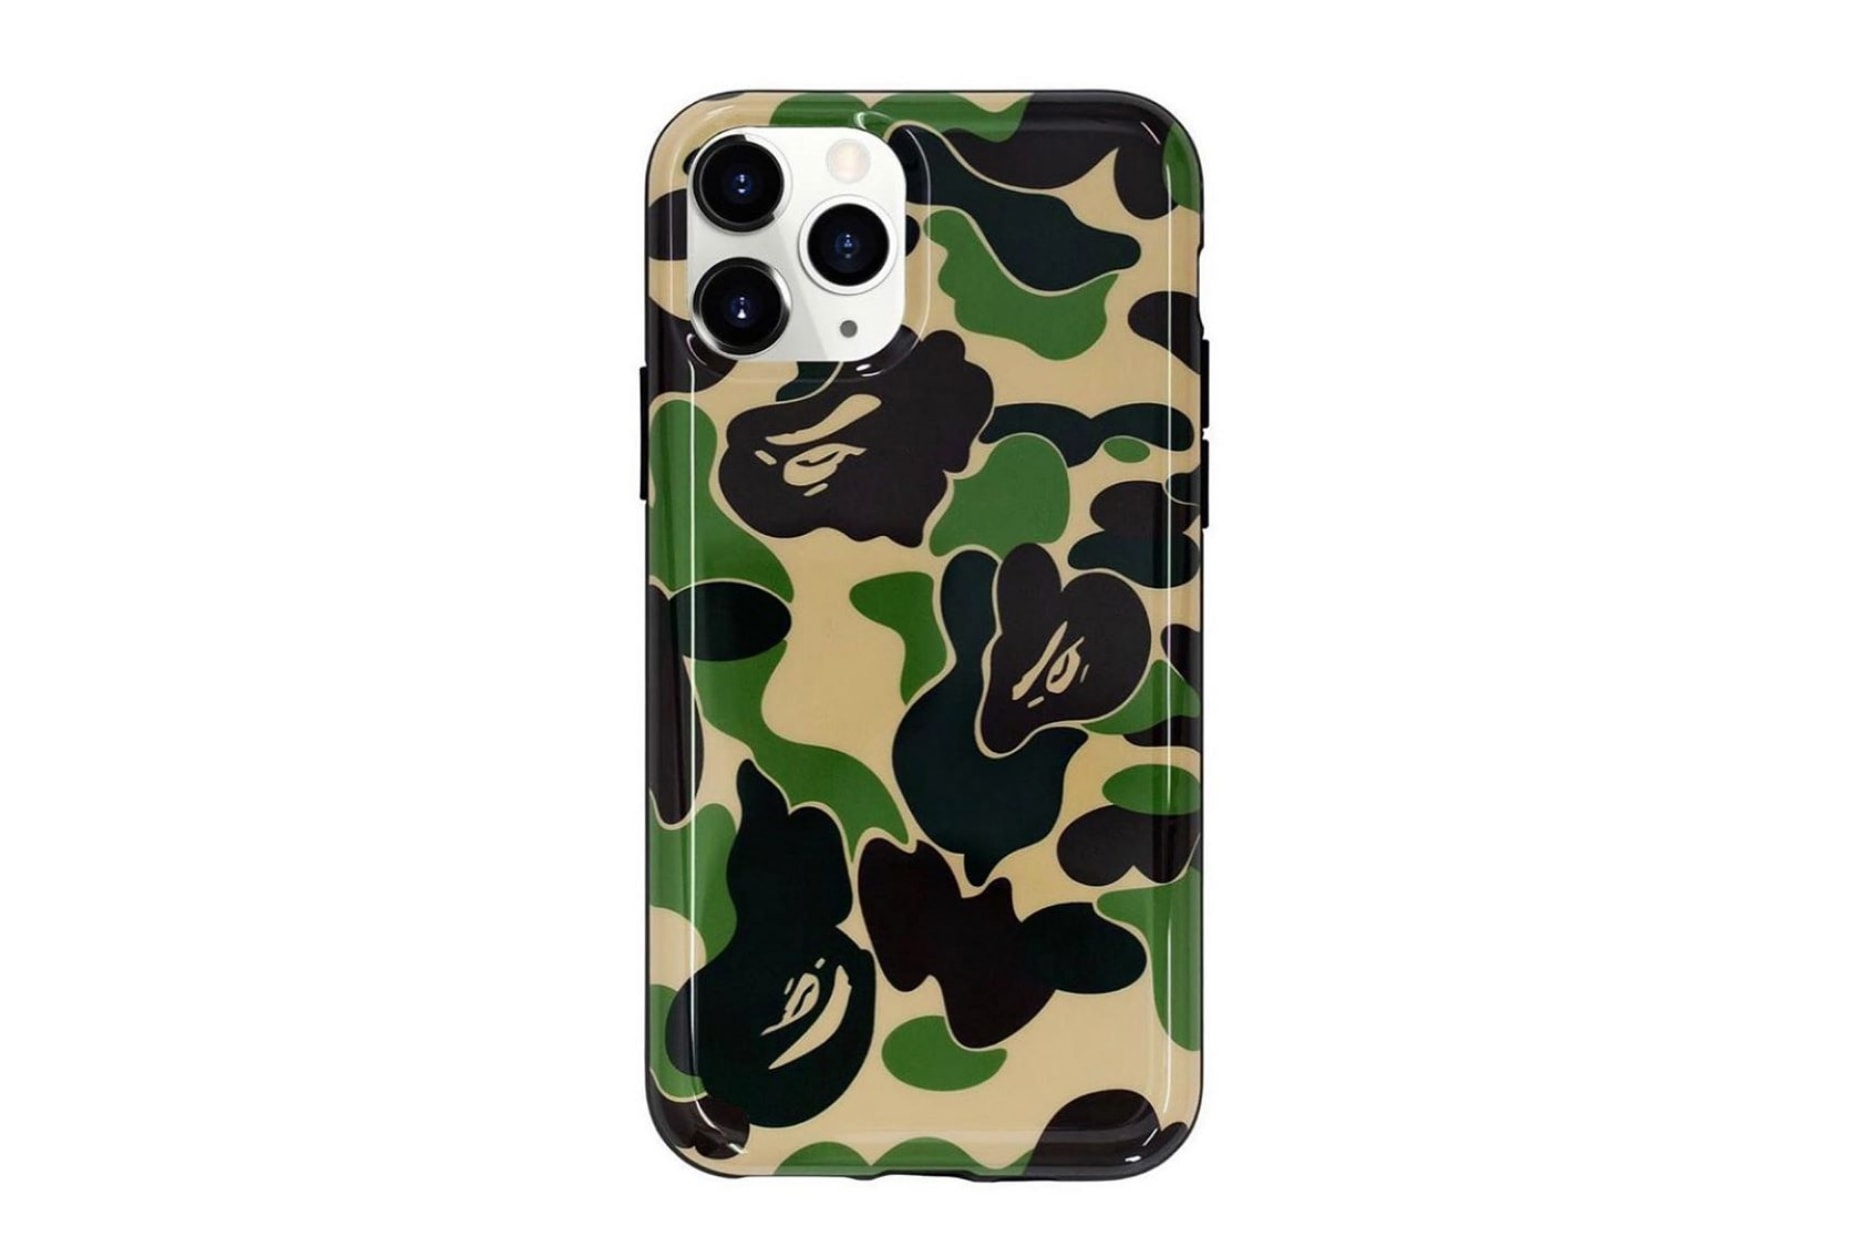 Supreme Camo iPhone 12 Pro Max Clear Case